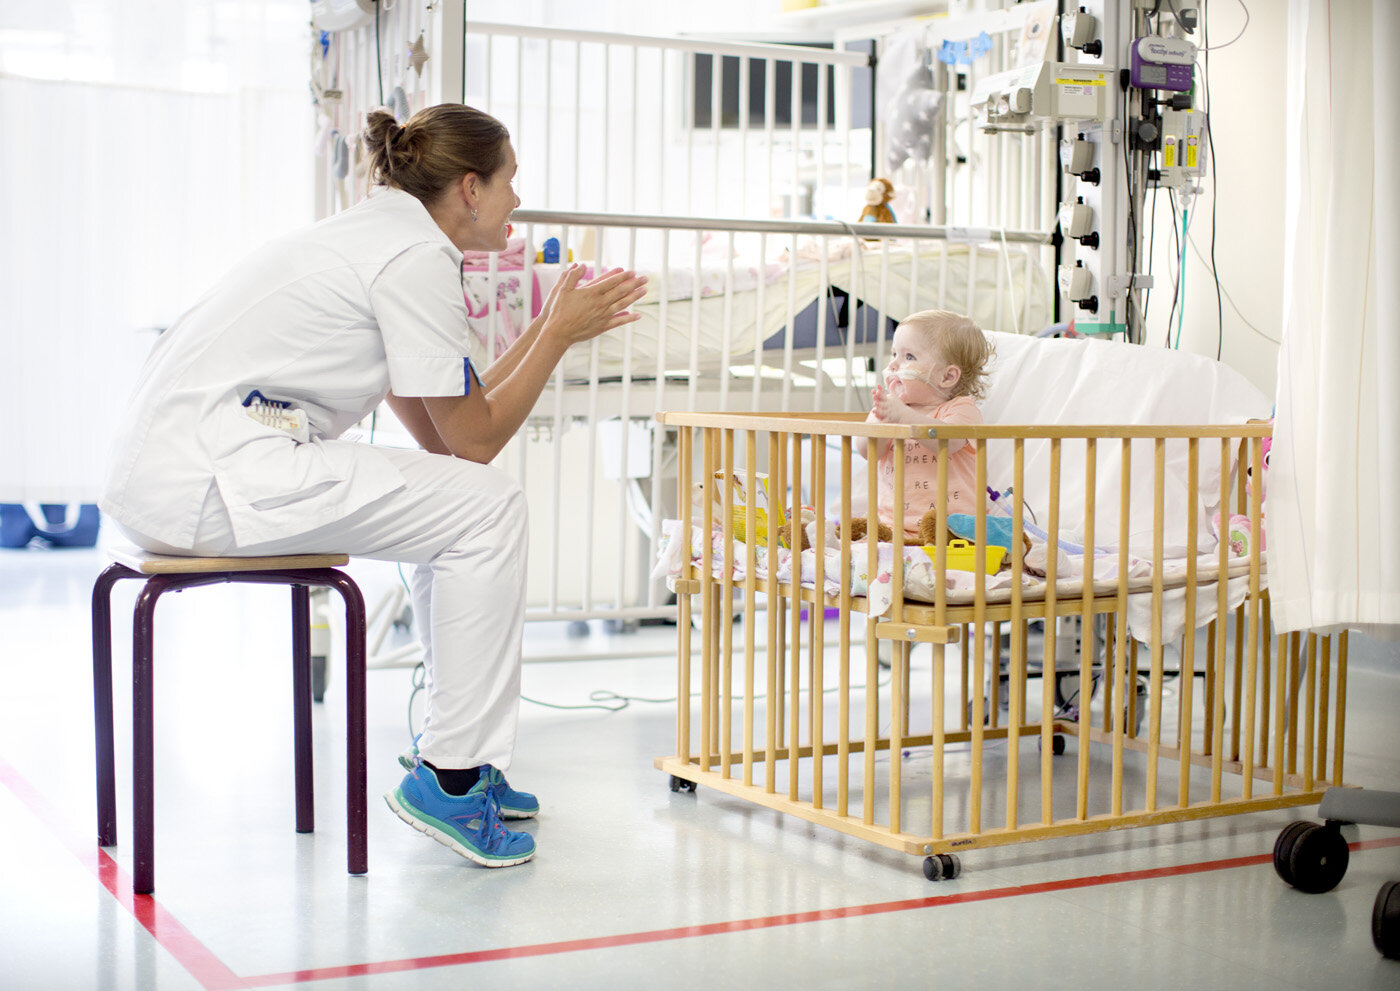  Children’s Sophia Hospital |  The Netherlands.  